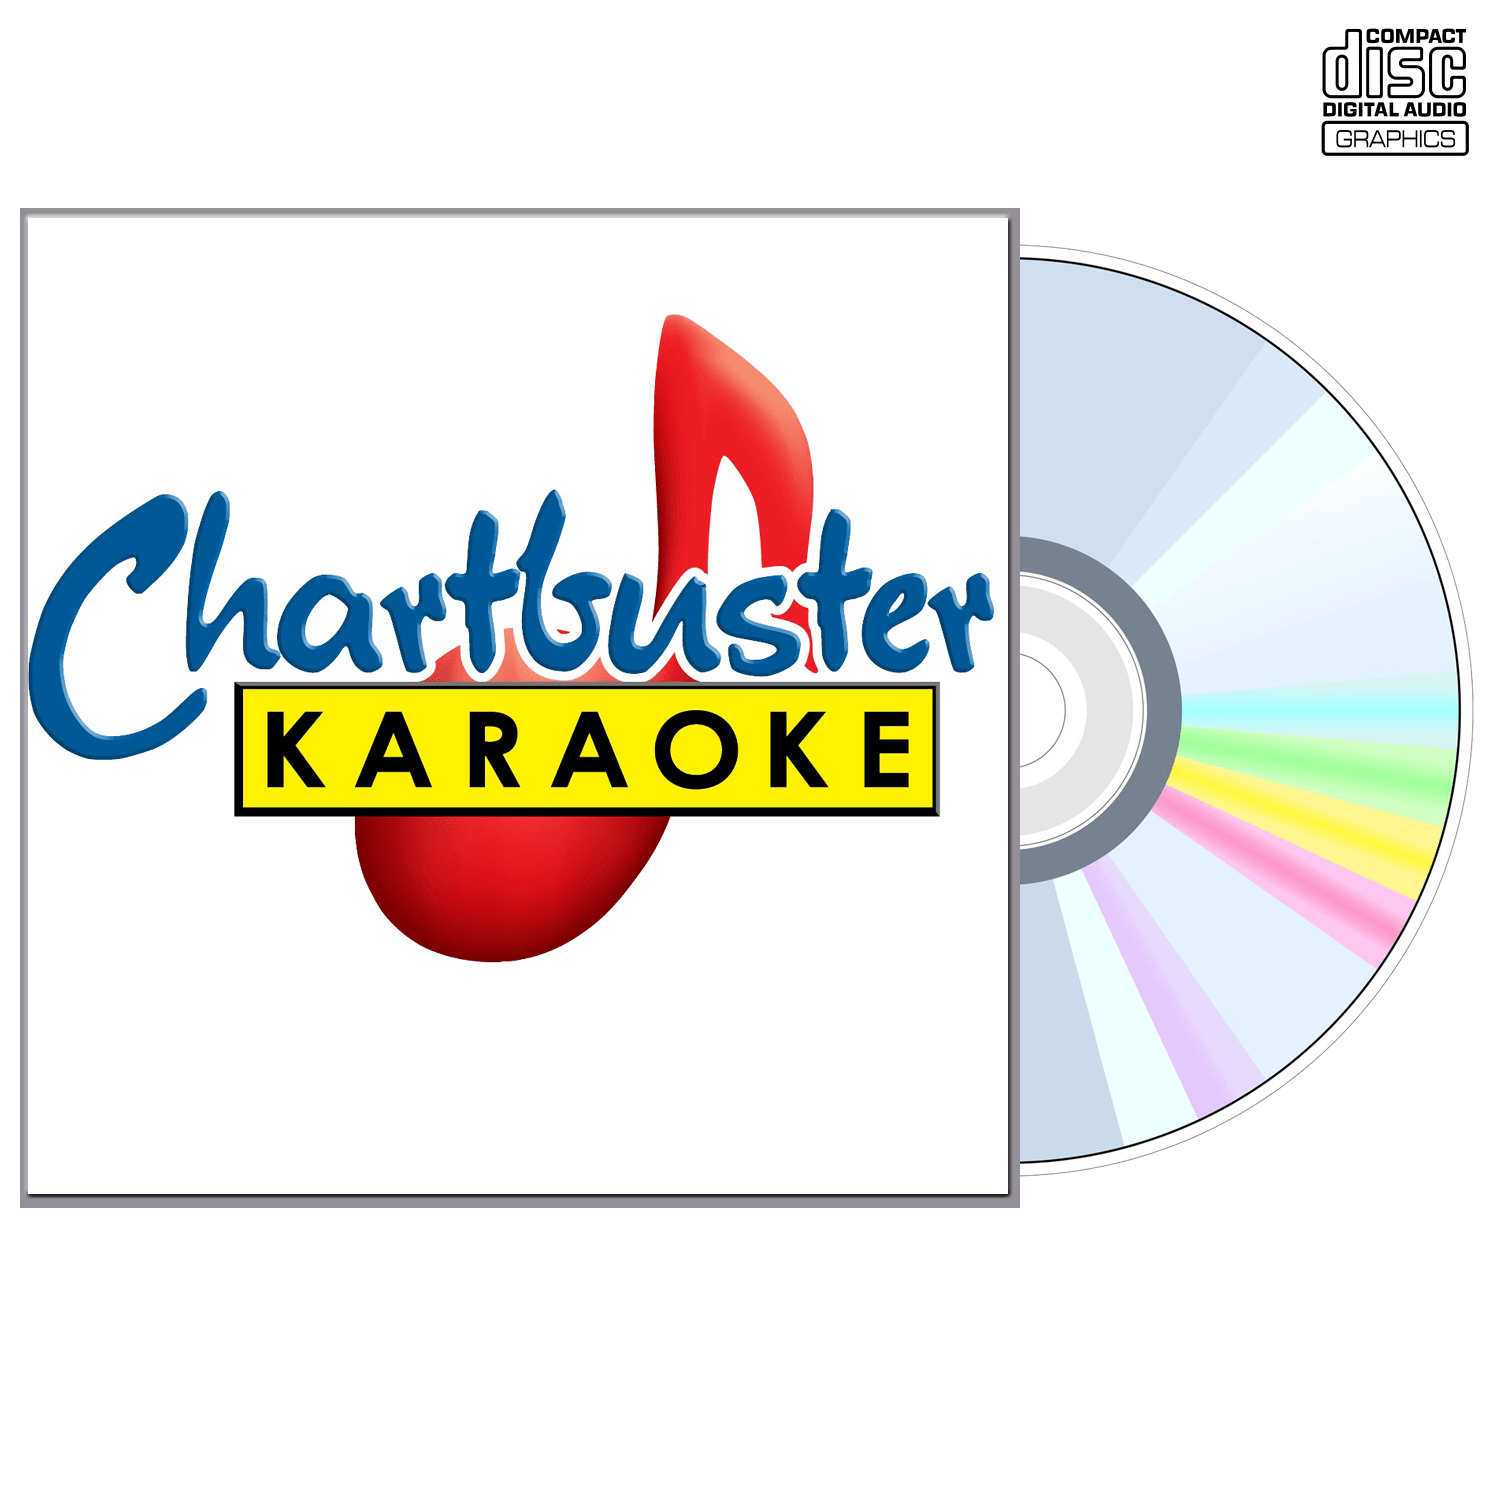 Best Of Gene Watson - CD+G - Chartbuster Karaoke - Karaoke Home Entertainment